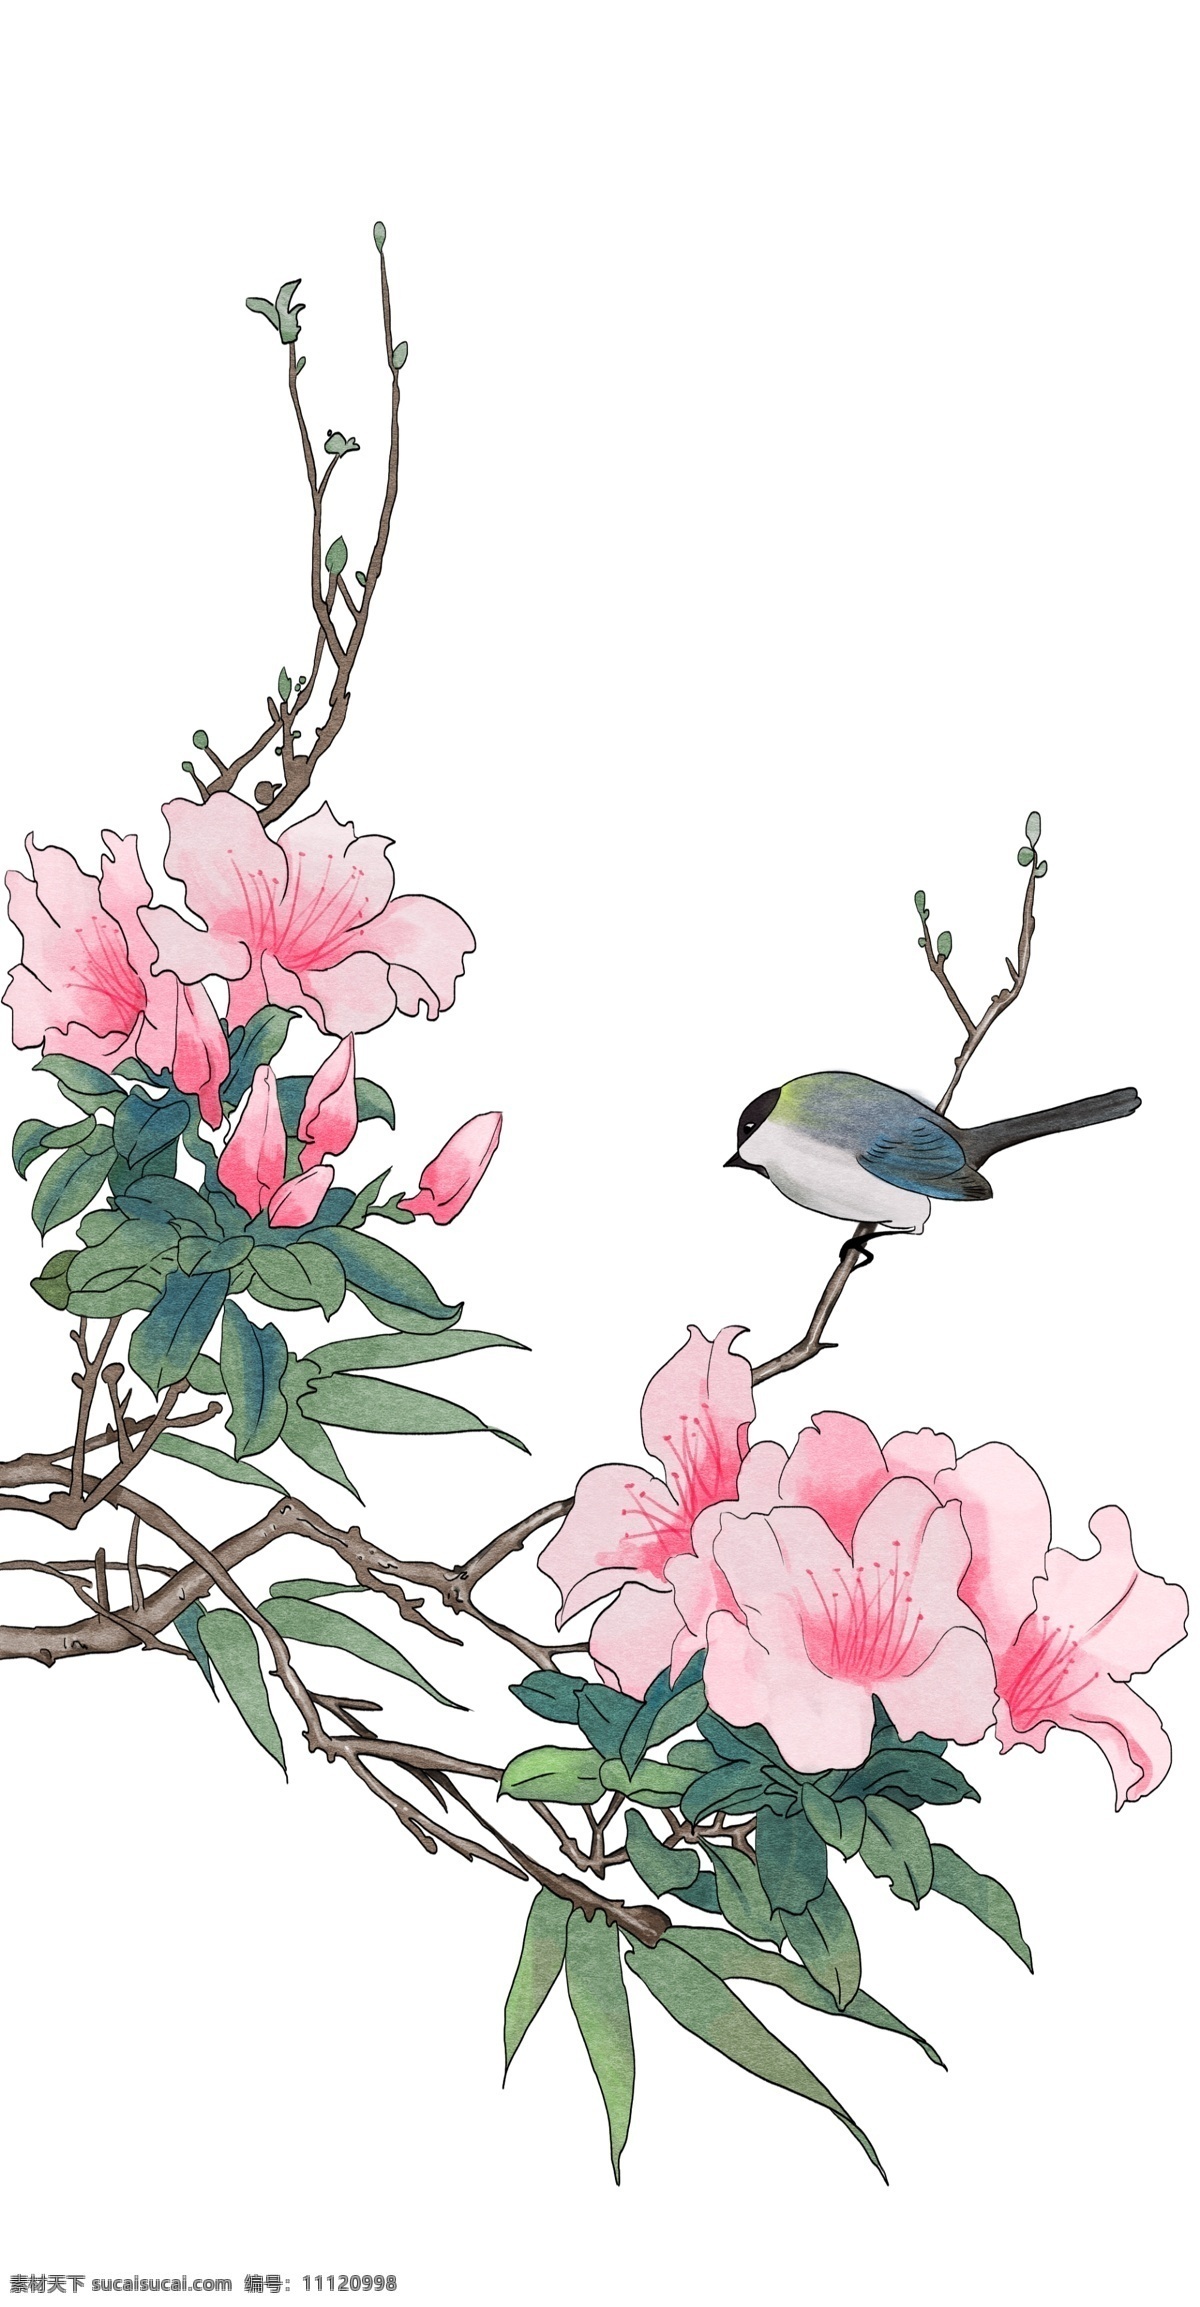 植物 卡通 手绘 插画 牡丹花 粉色 中国风 麻雀 小鸟 动物 唯美 清新 树干 简单 工笔画 彩色 简约风 树叶 叶子